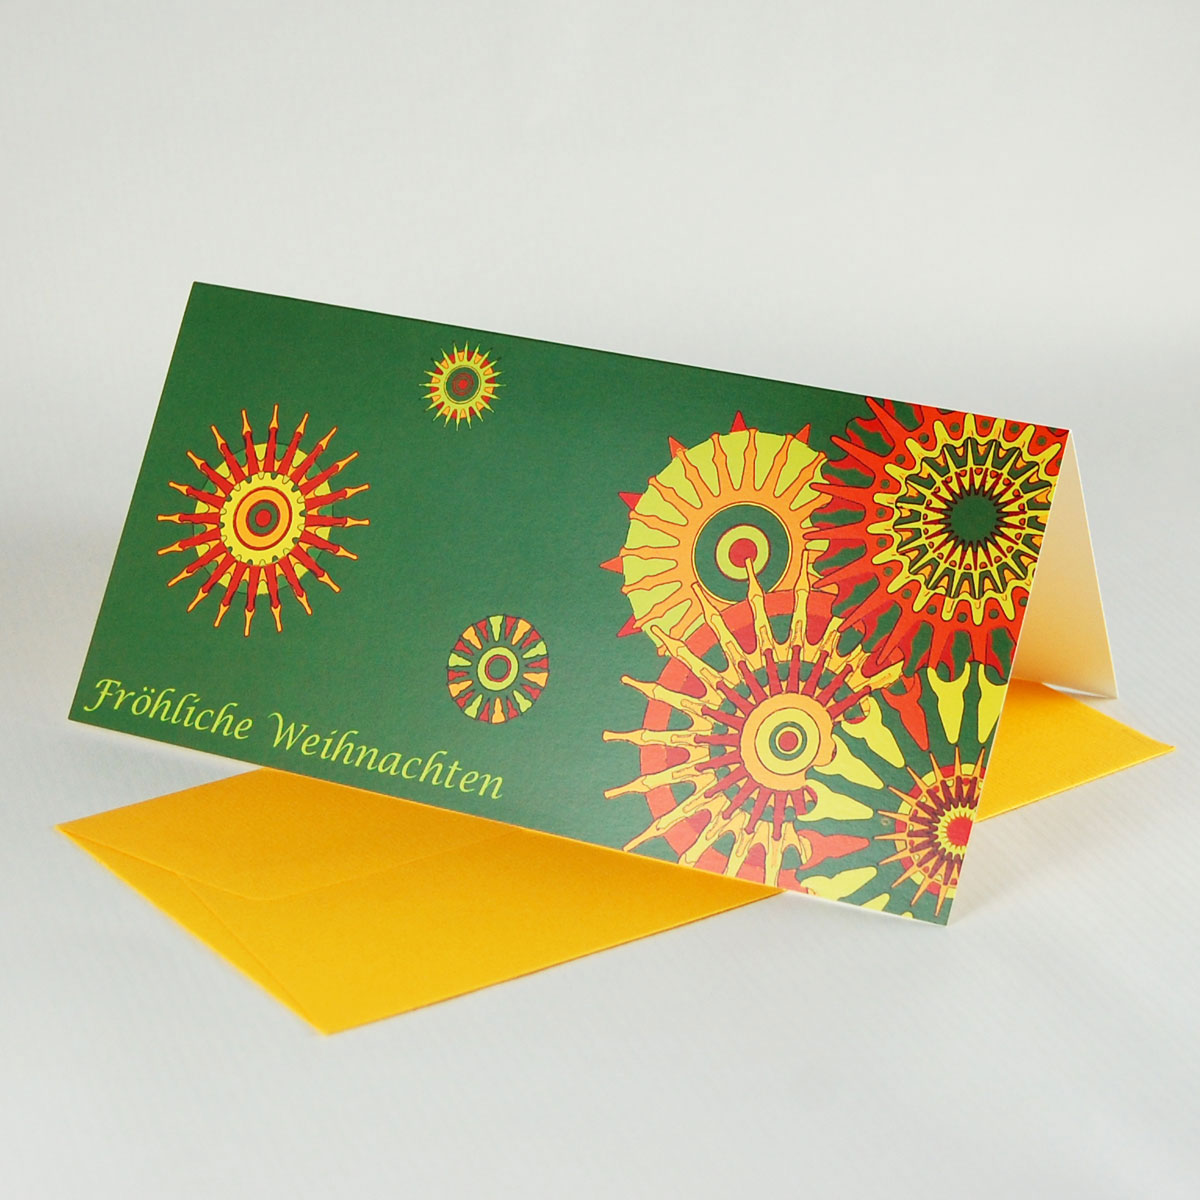 Fröhliche Weihnachten - olivgrüne Design-Weihnachtskarte mit farbigem Umschlag